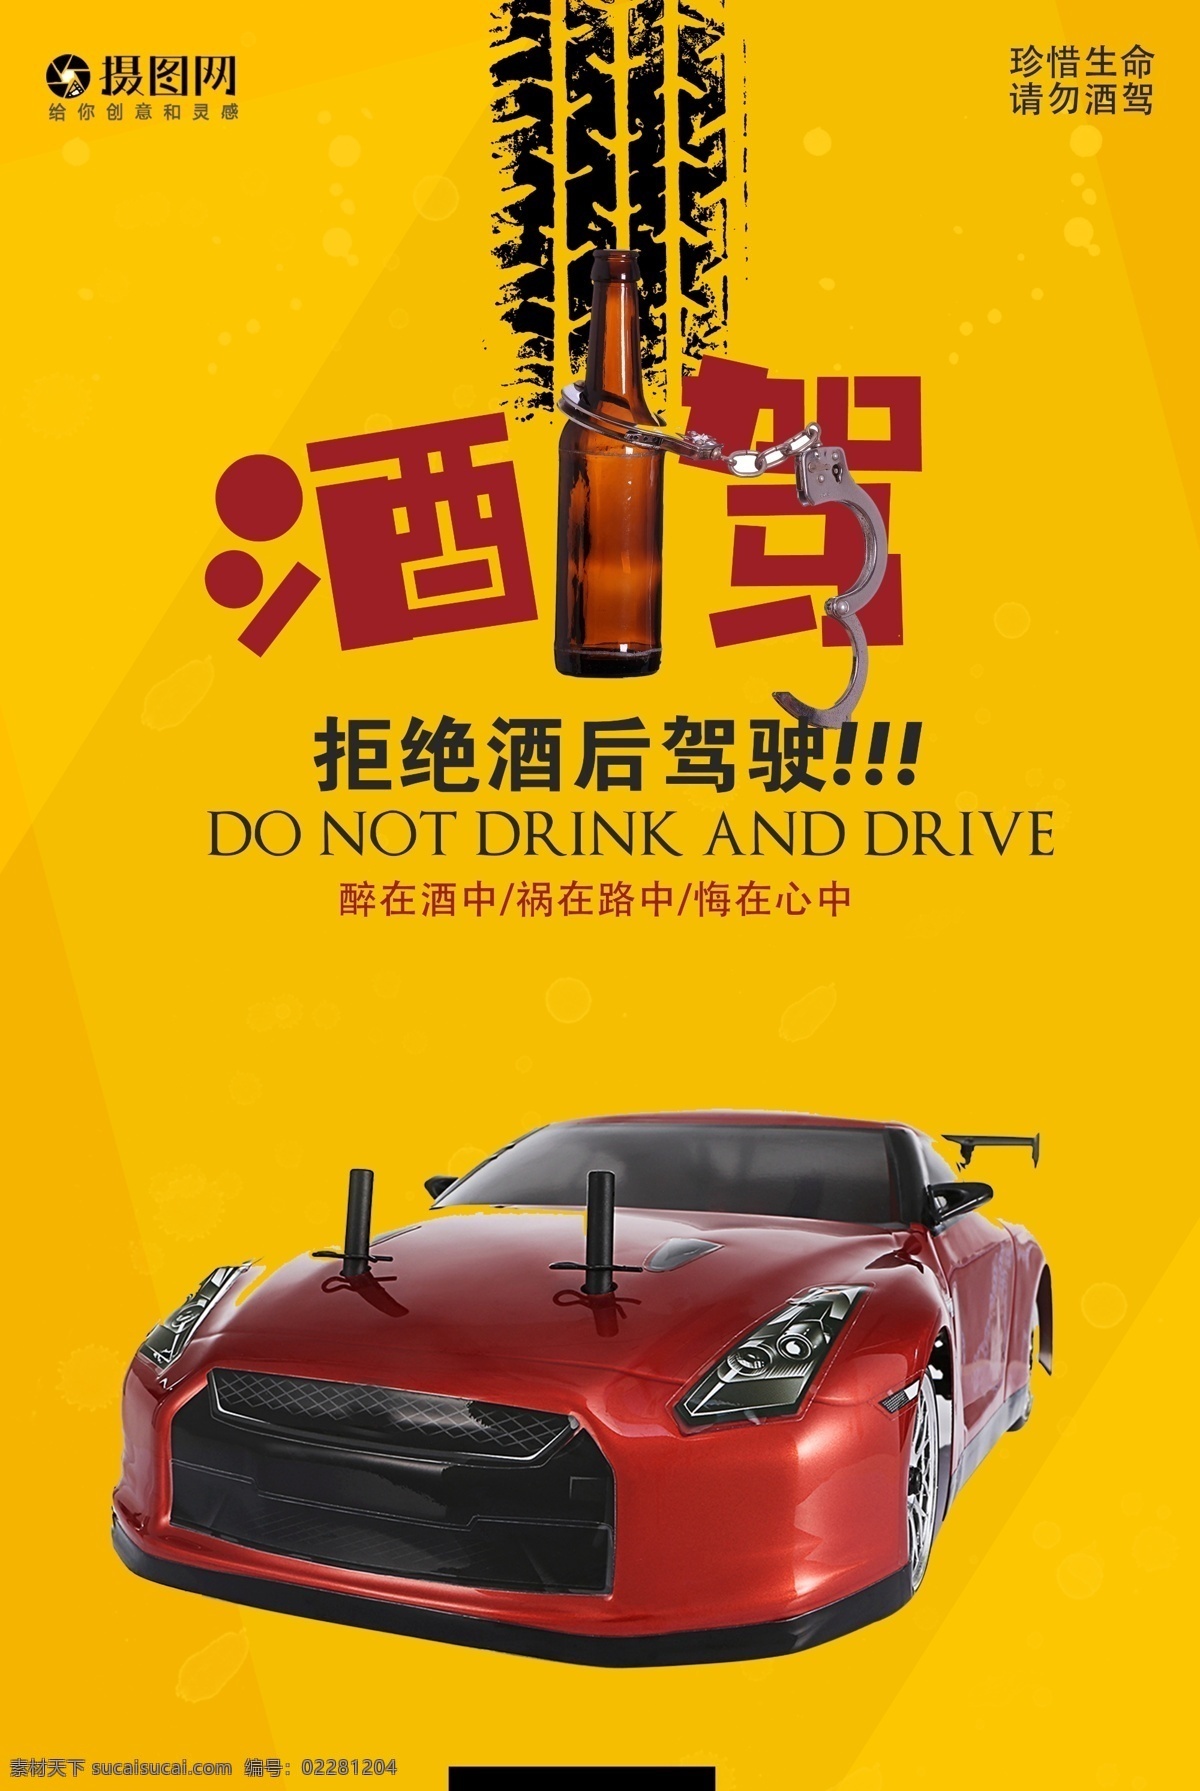 拒绝 酒 驾 公益 海报 拒绝酒驾 请勿酒驾 行车 出行 驾驶 安全 黄色 交通 规则 汽车